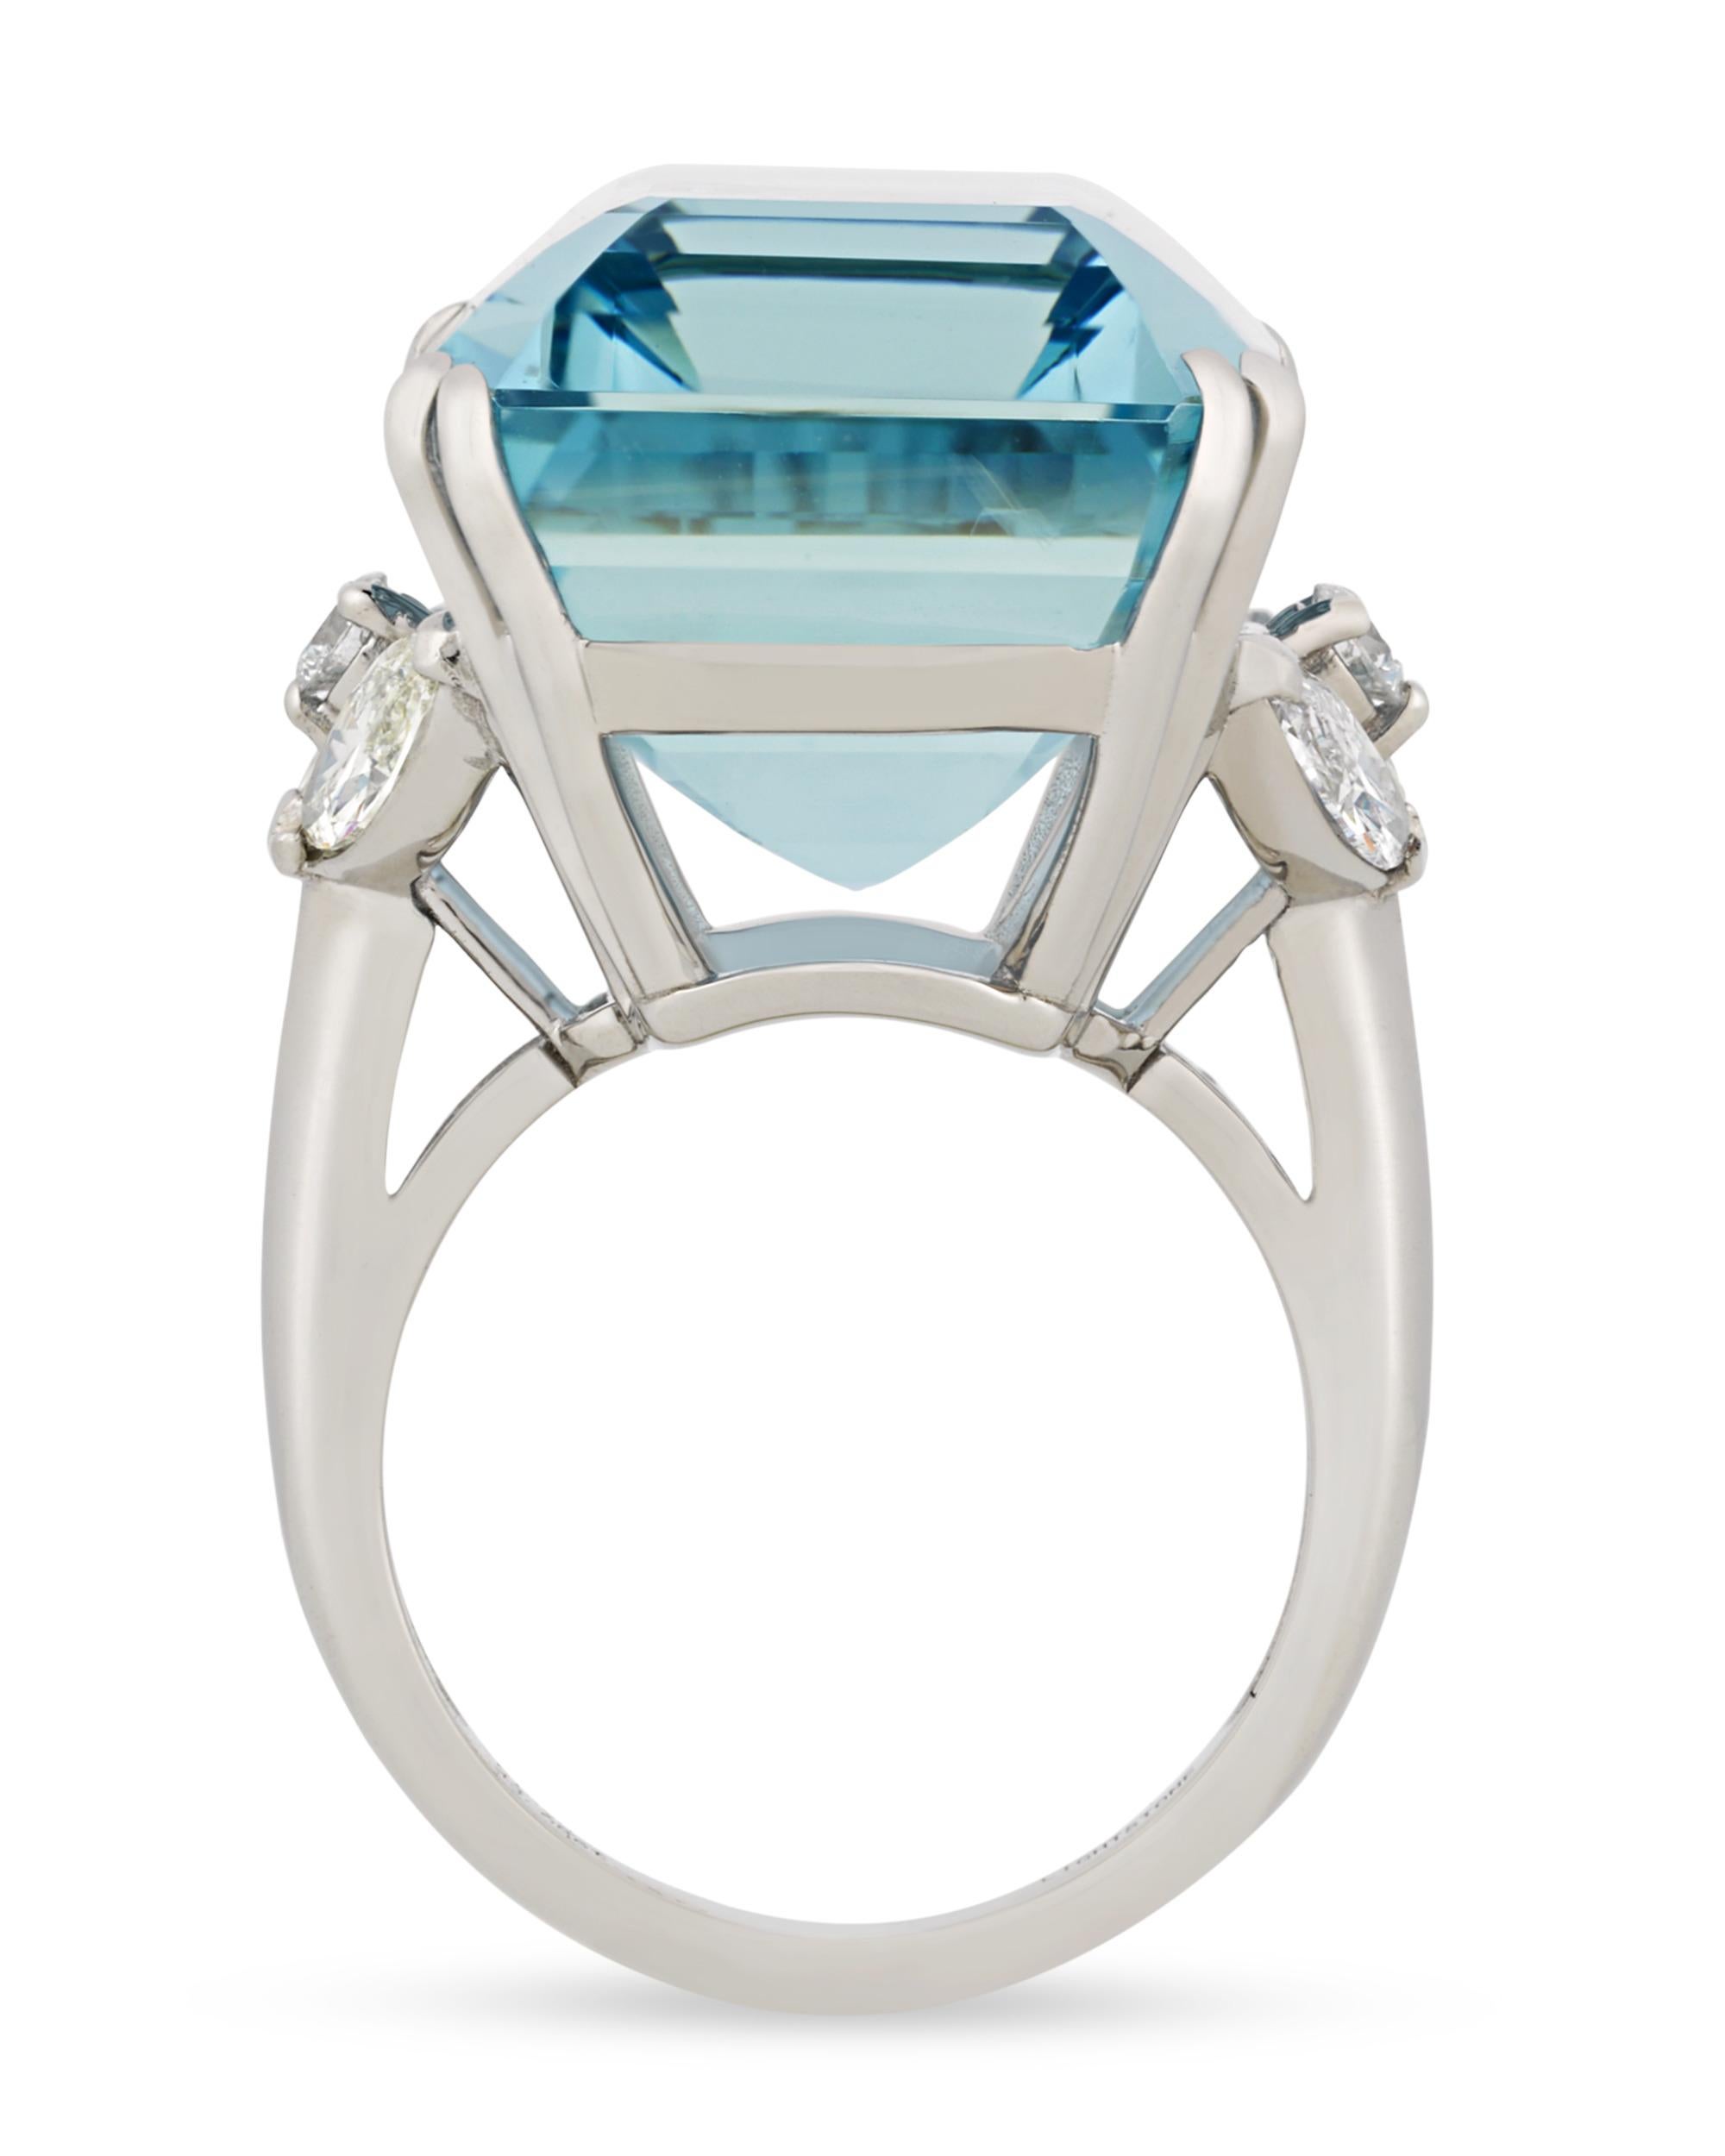 aquamarine rings for sale